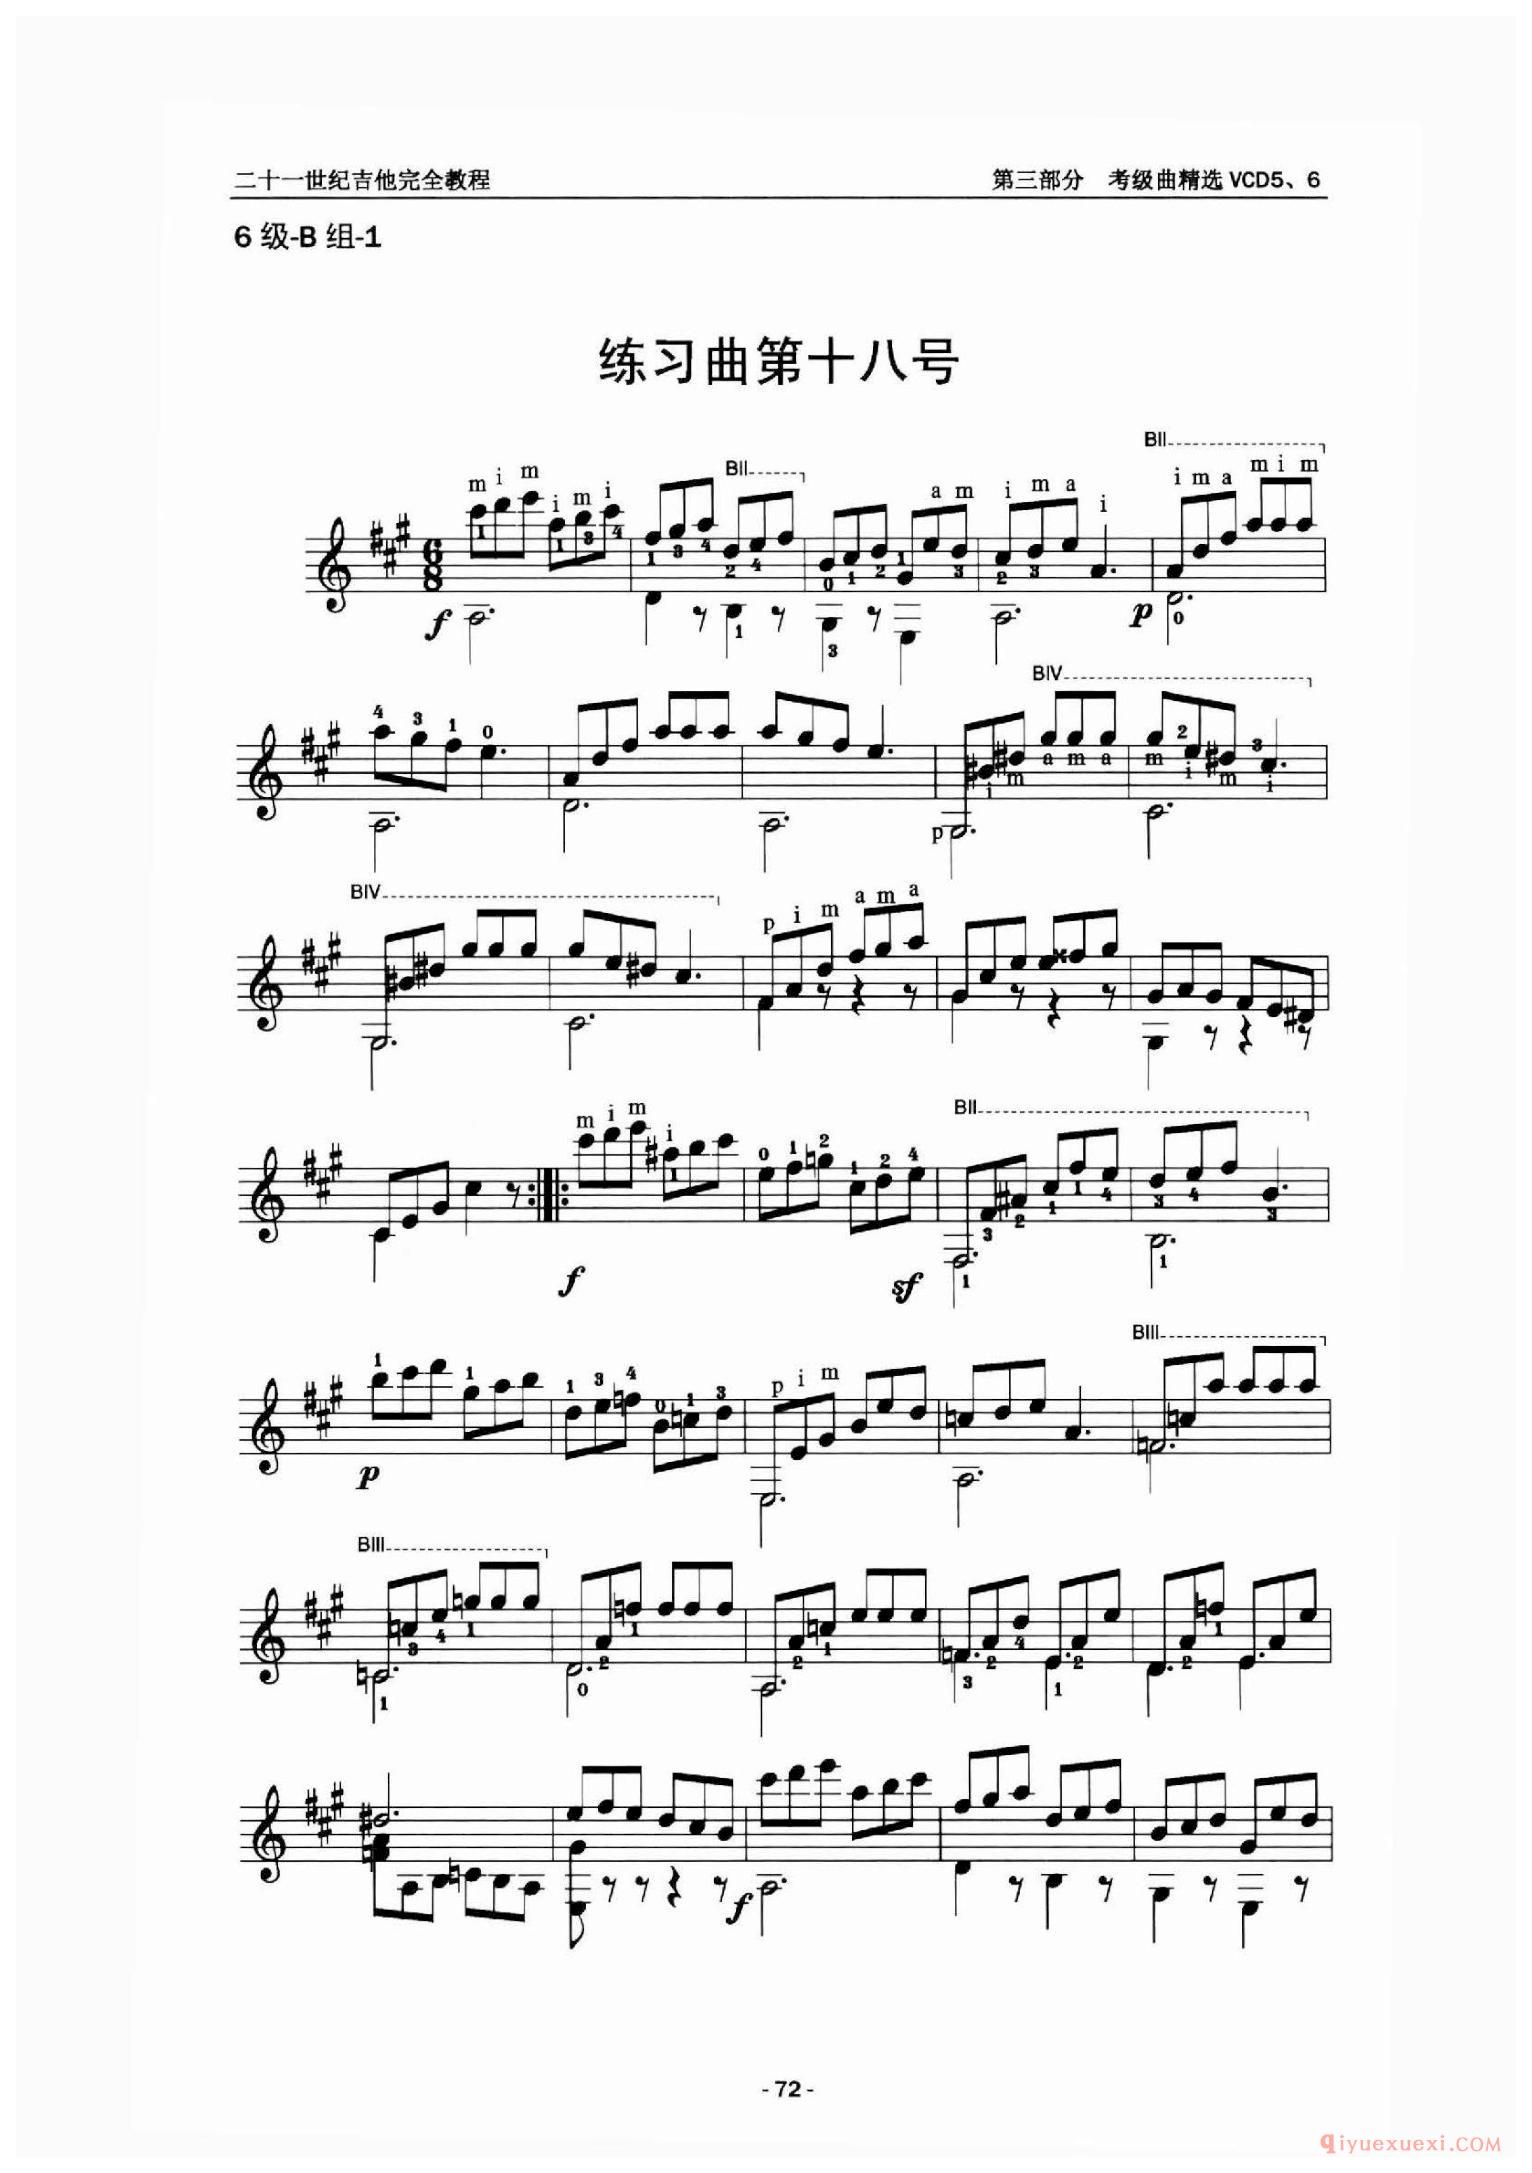 6级曲目_练习曲第十八号_中国中央音乐学院吉他考级曲谱